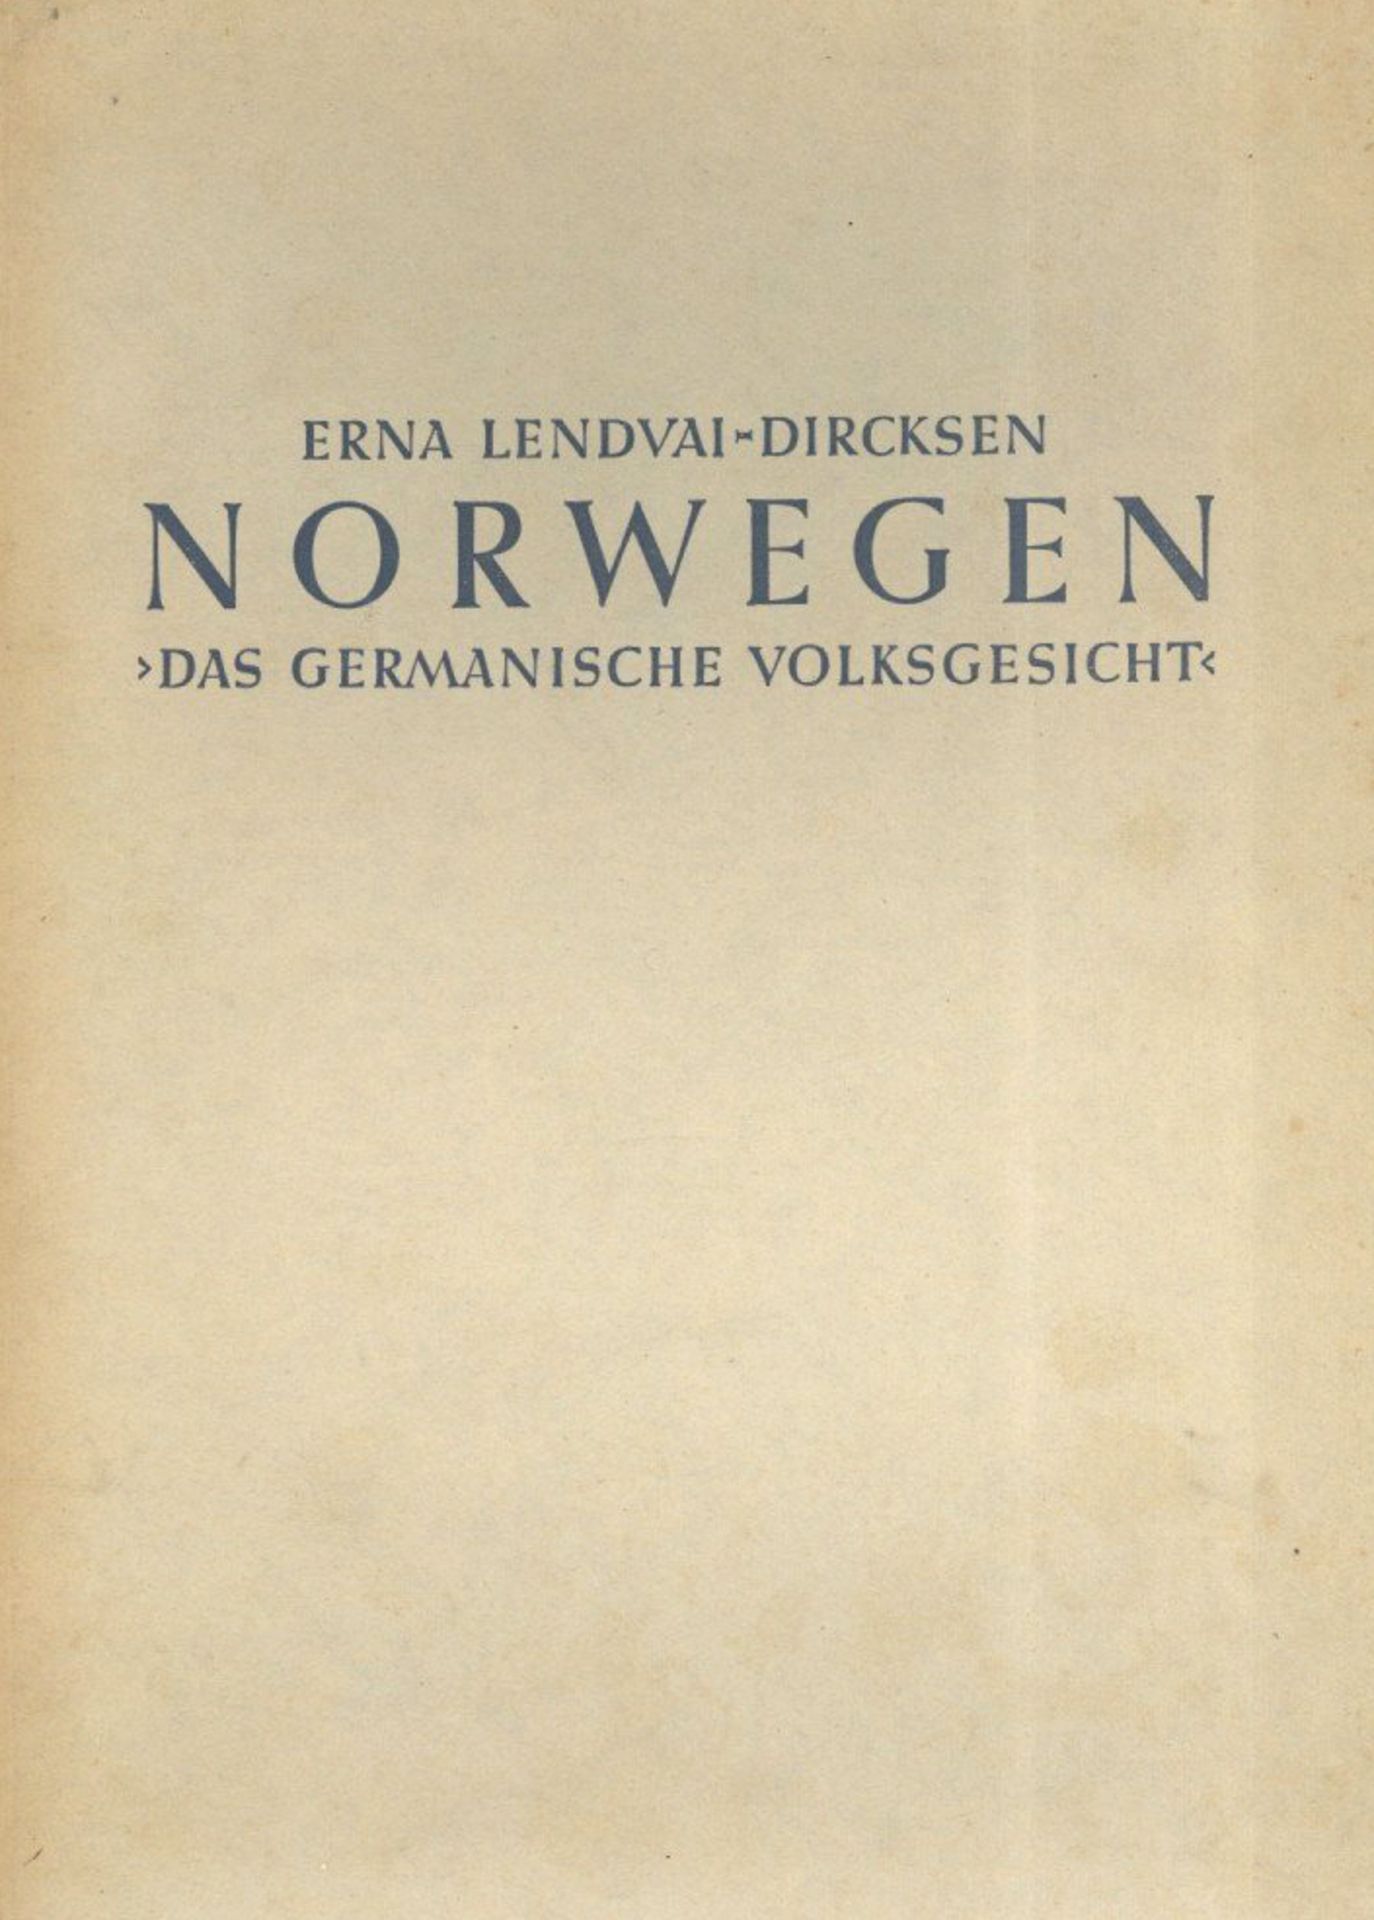 Buch WK II Das Germanische Volksgesicht Norwegen Bildband Lendvai-Dircksen, Erna 1942 Verlag